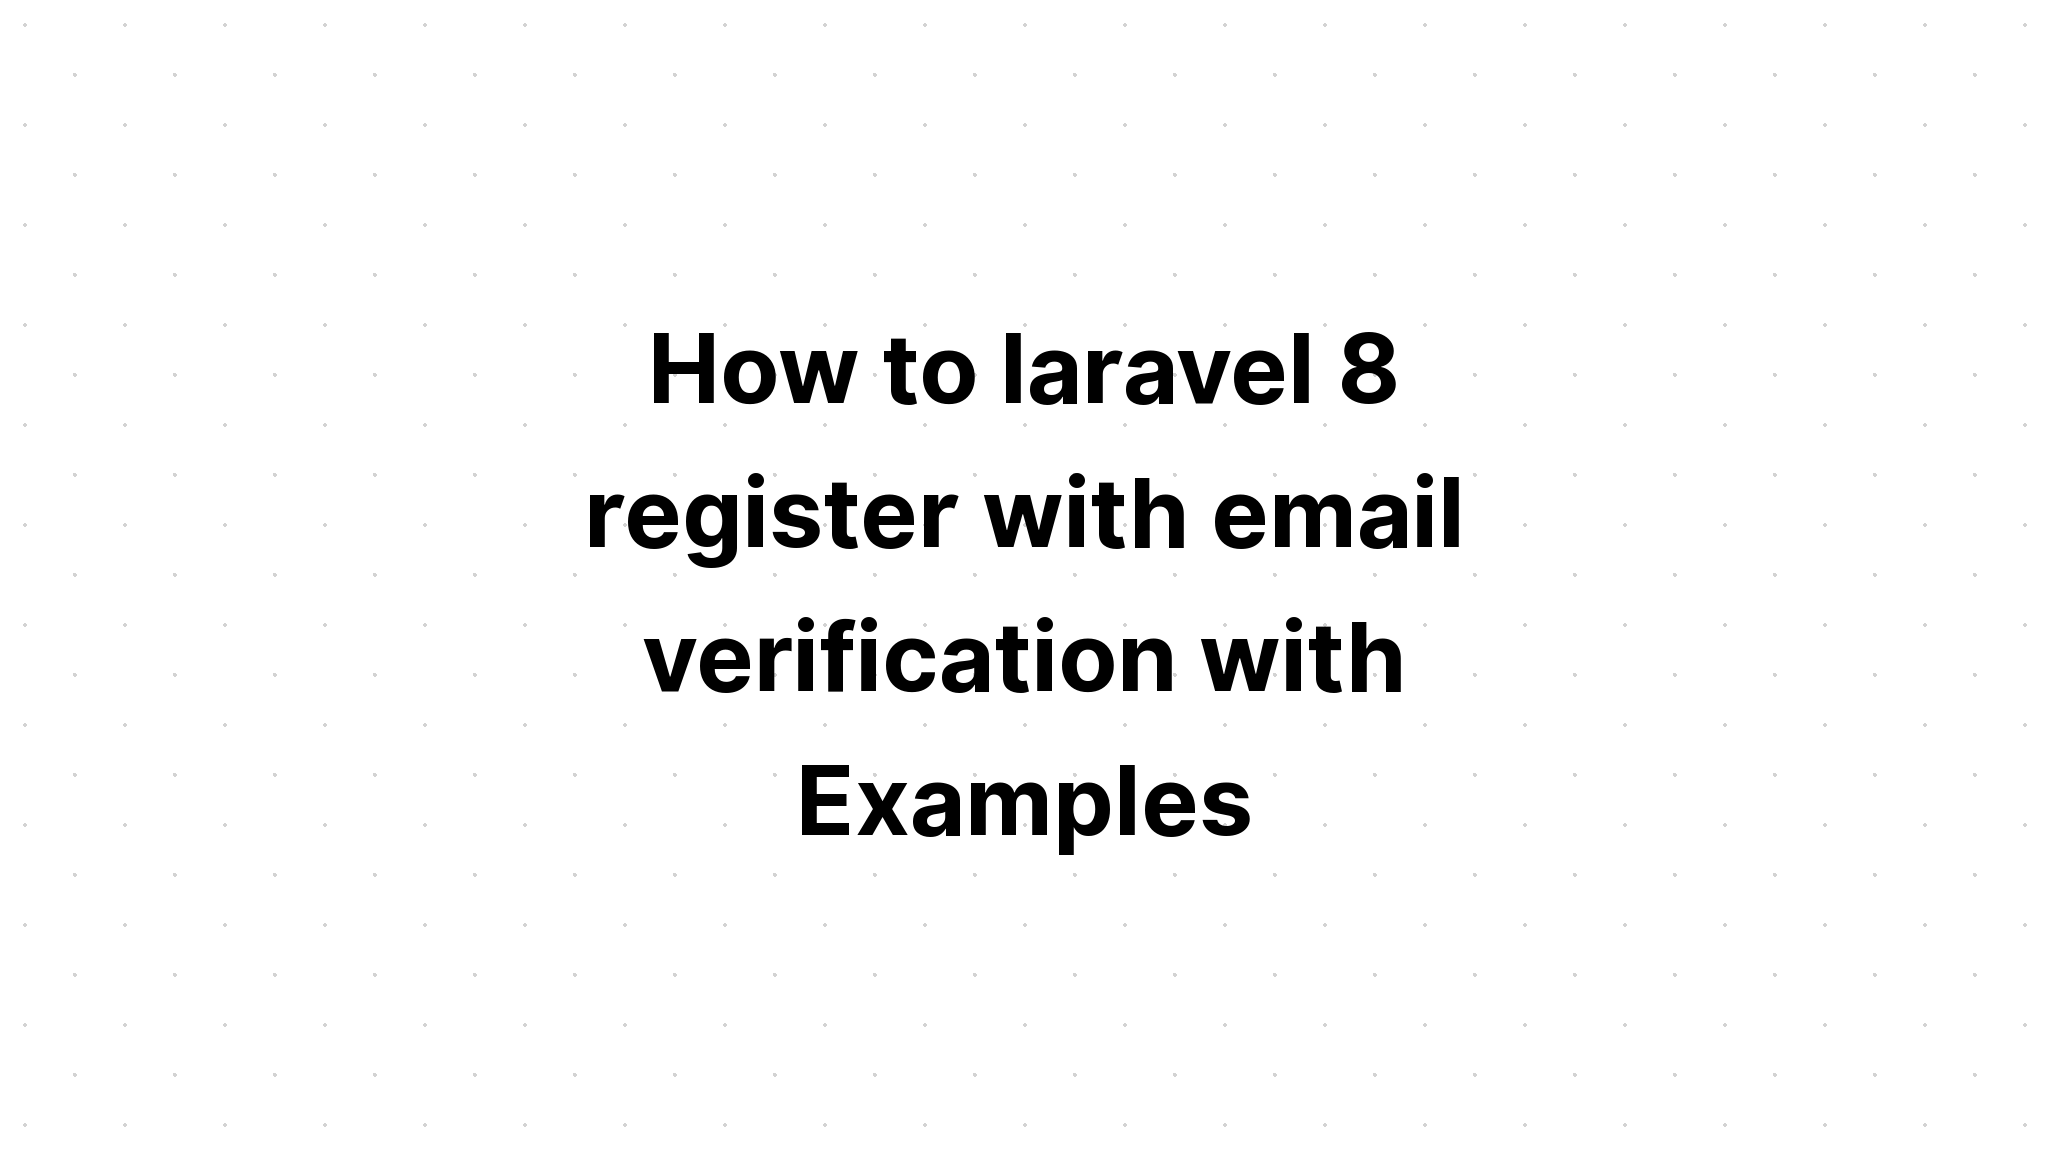 Cách đăng ký laravel 8 với xác minh email với Ví dụ